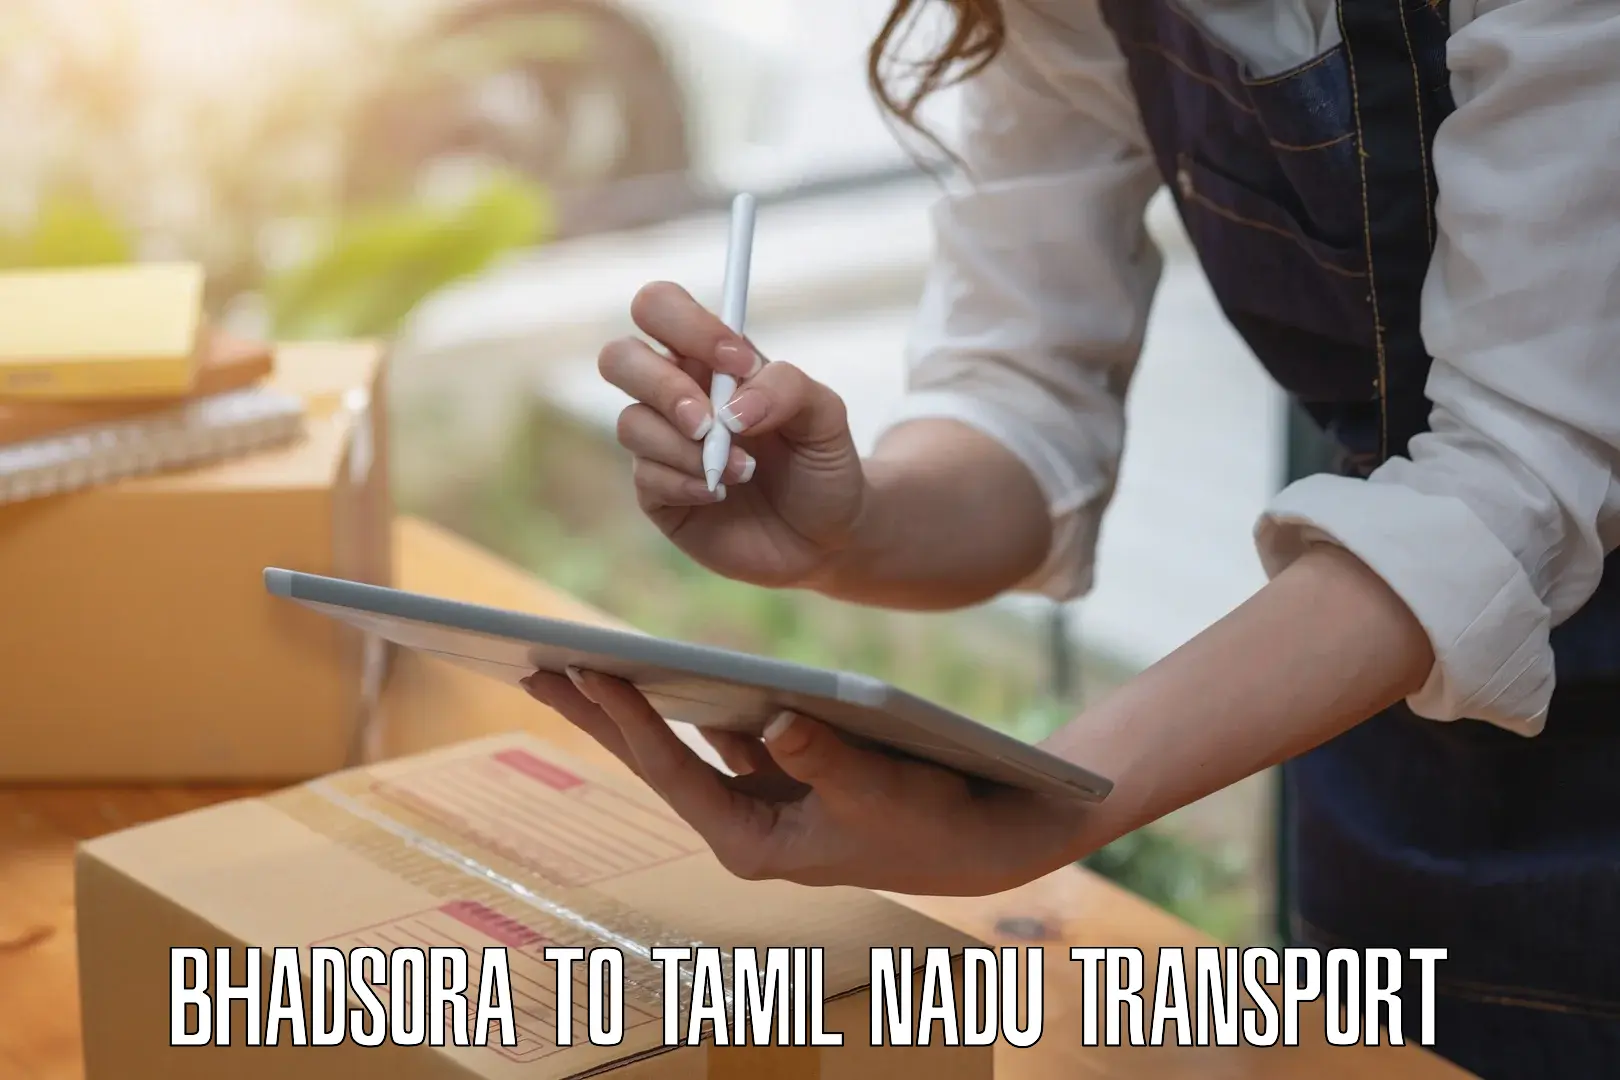 Road transport online services Bhadsora to Tiruchirappalli